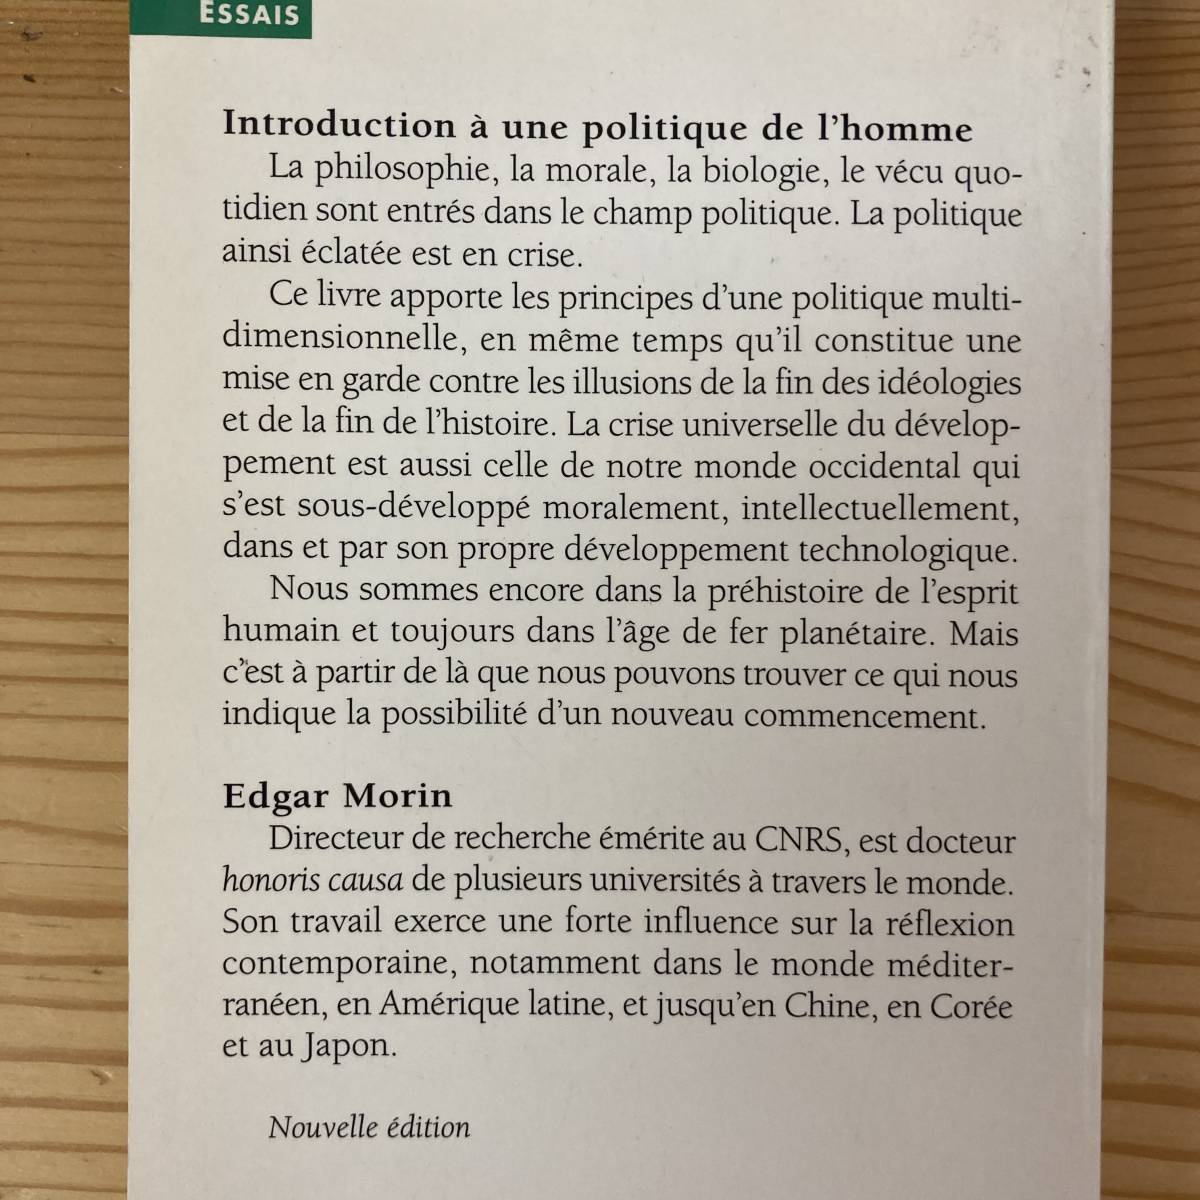 【仏語洋書】政治的人間 Introduction a une politique de l’homme / エドガール・モラン Edgar Morin（著）_画像2